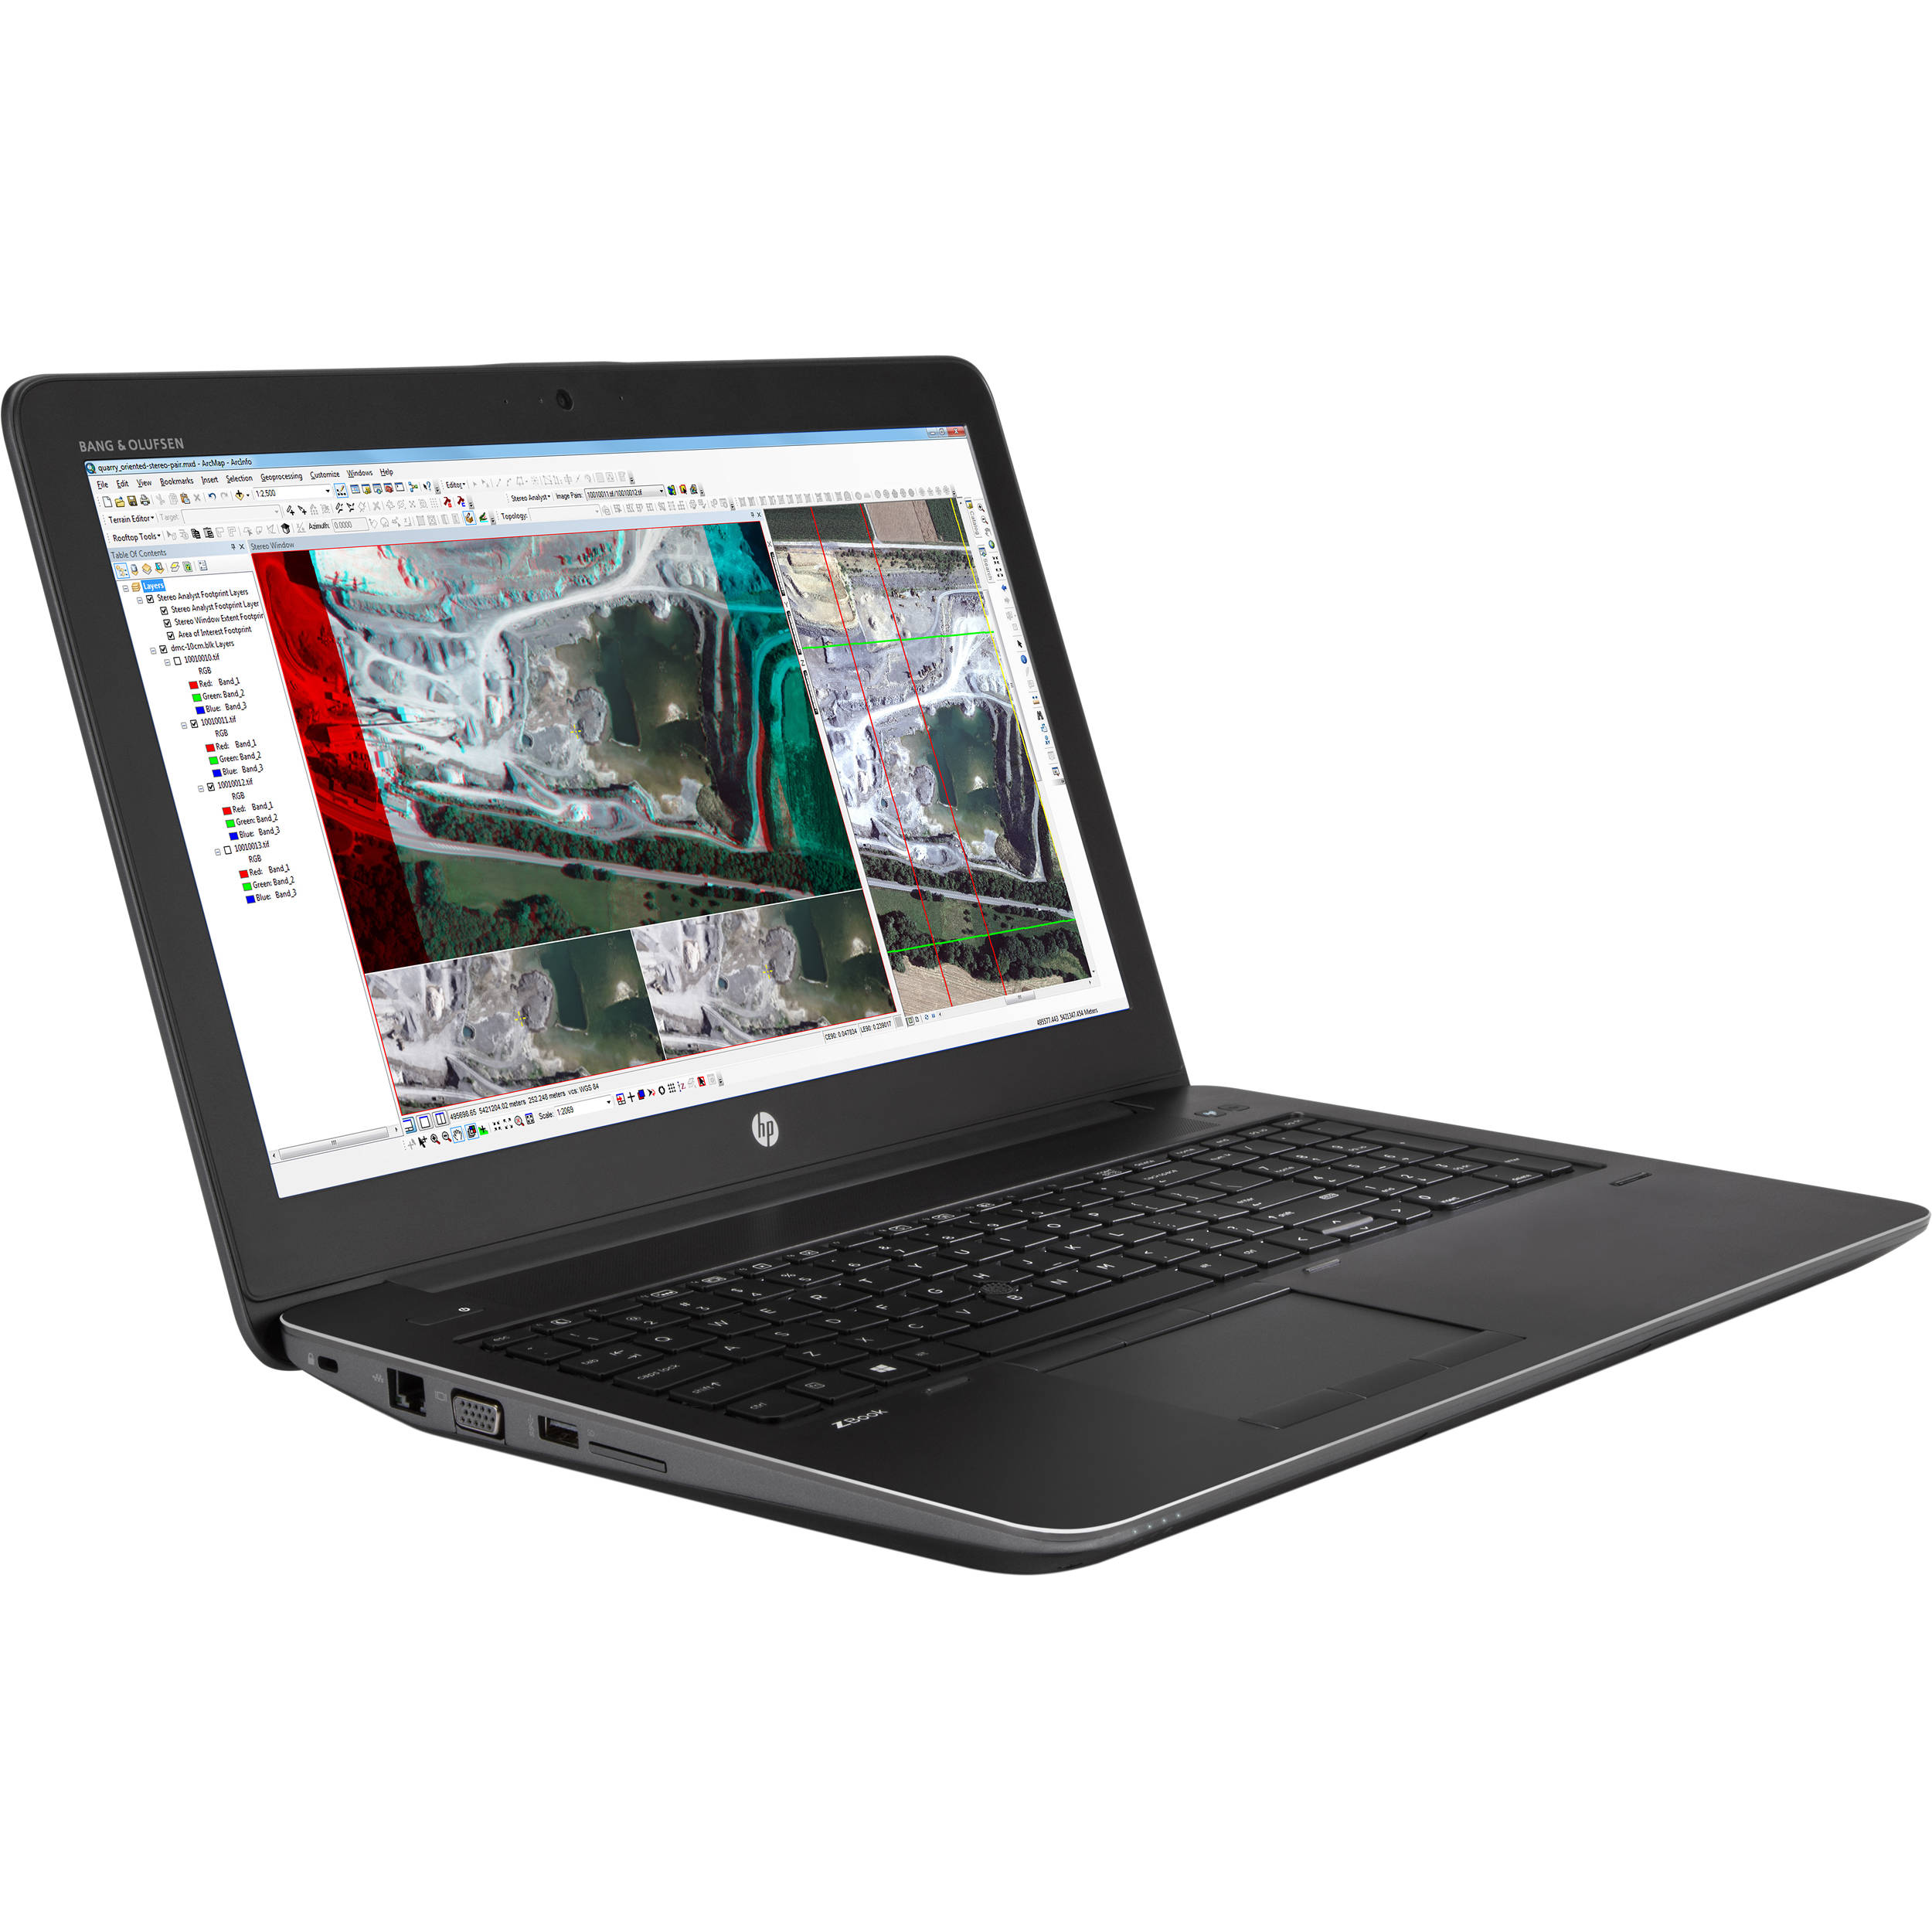 Đánh giá nhanh HP ZBook 15 G3 - Thiết bị vô cùng chuyên nghiệp và ấn tượng từ HP